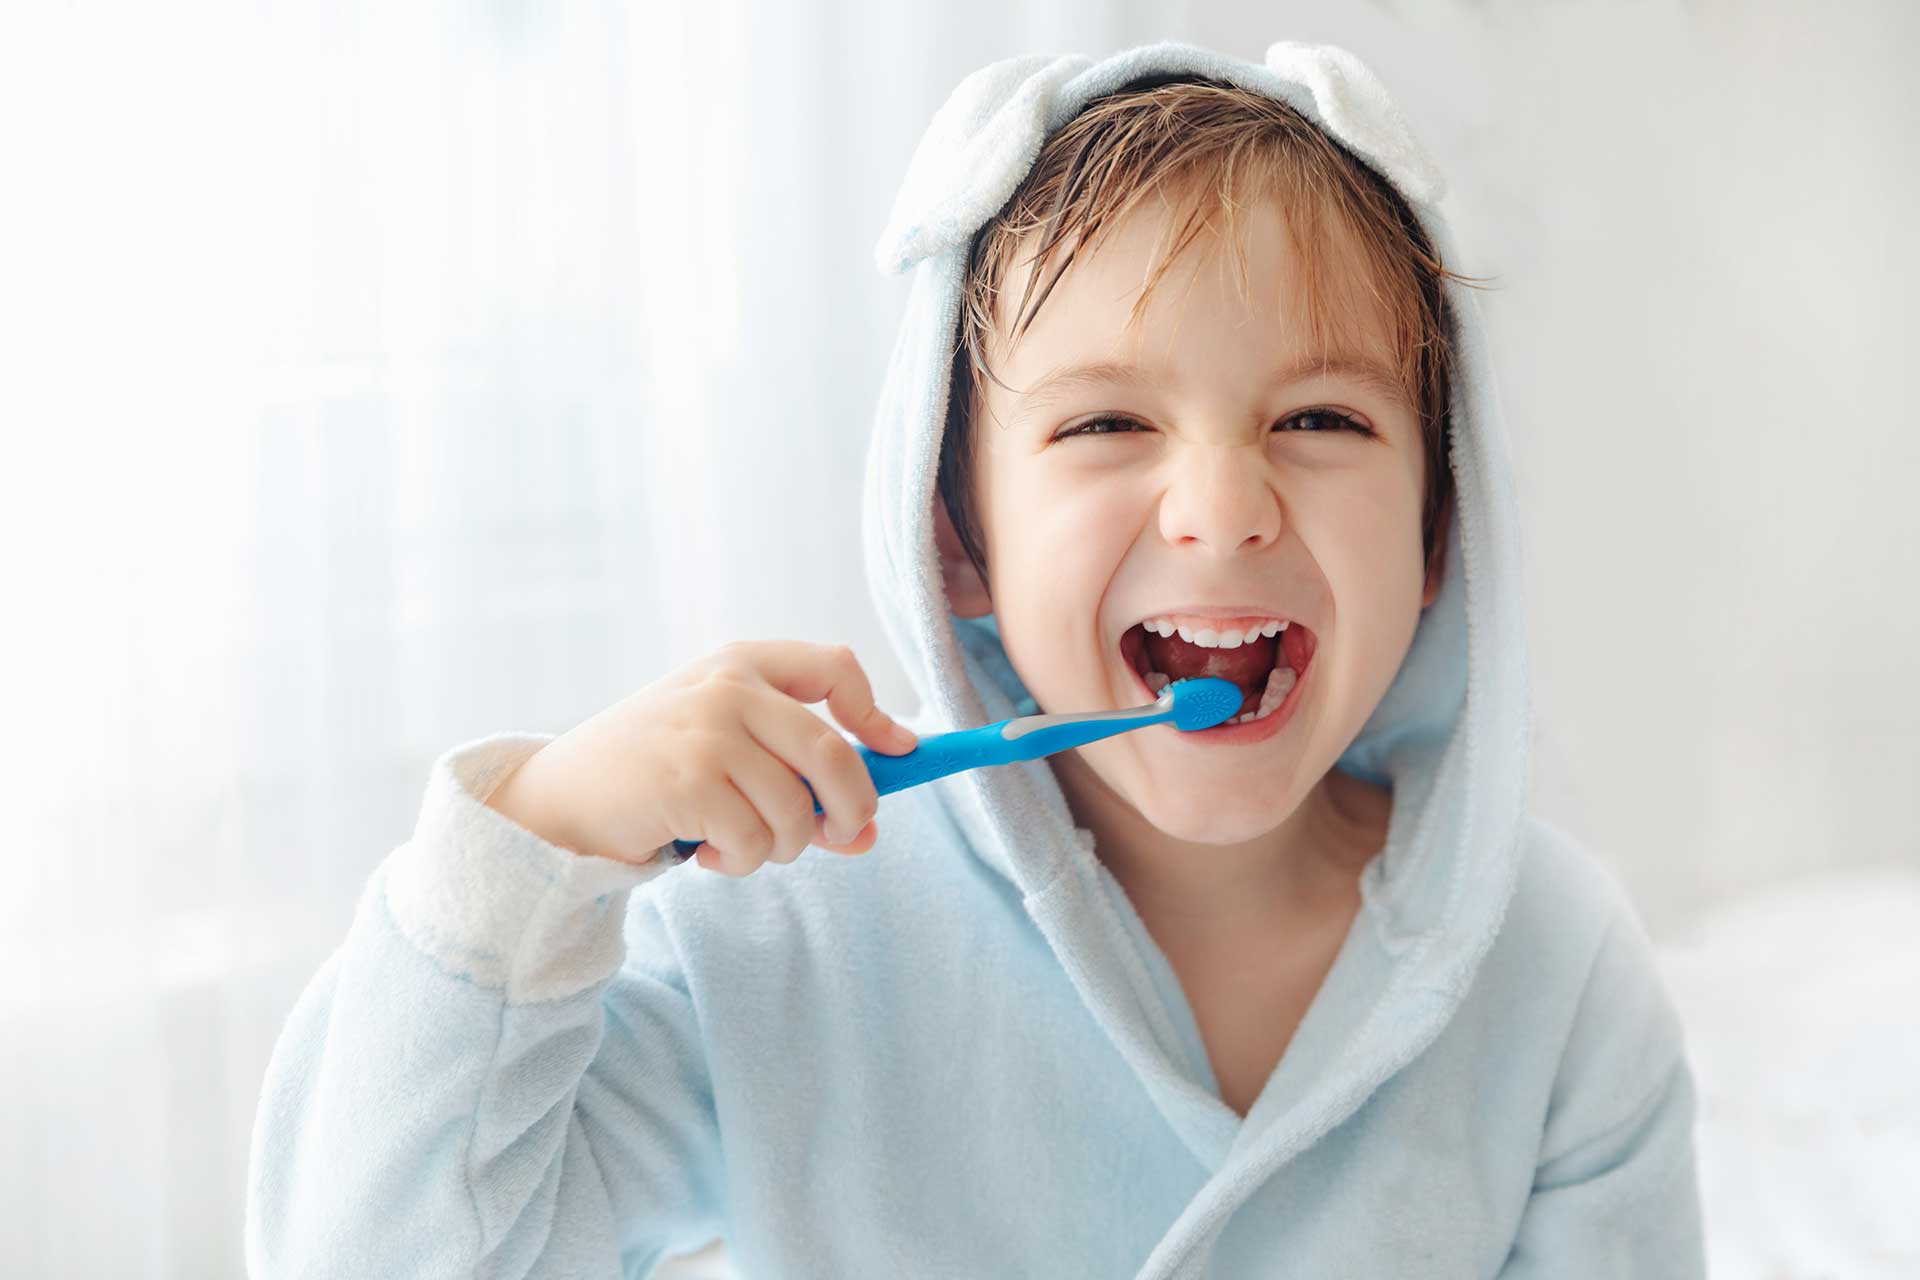 Dental Care for Children: Tips for Little Smiles